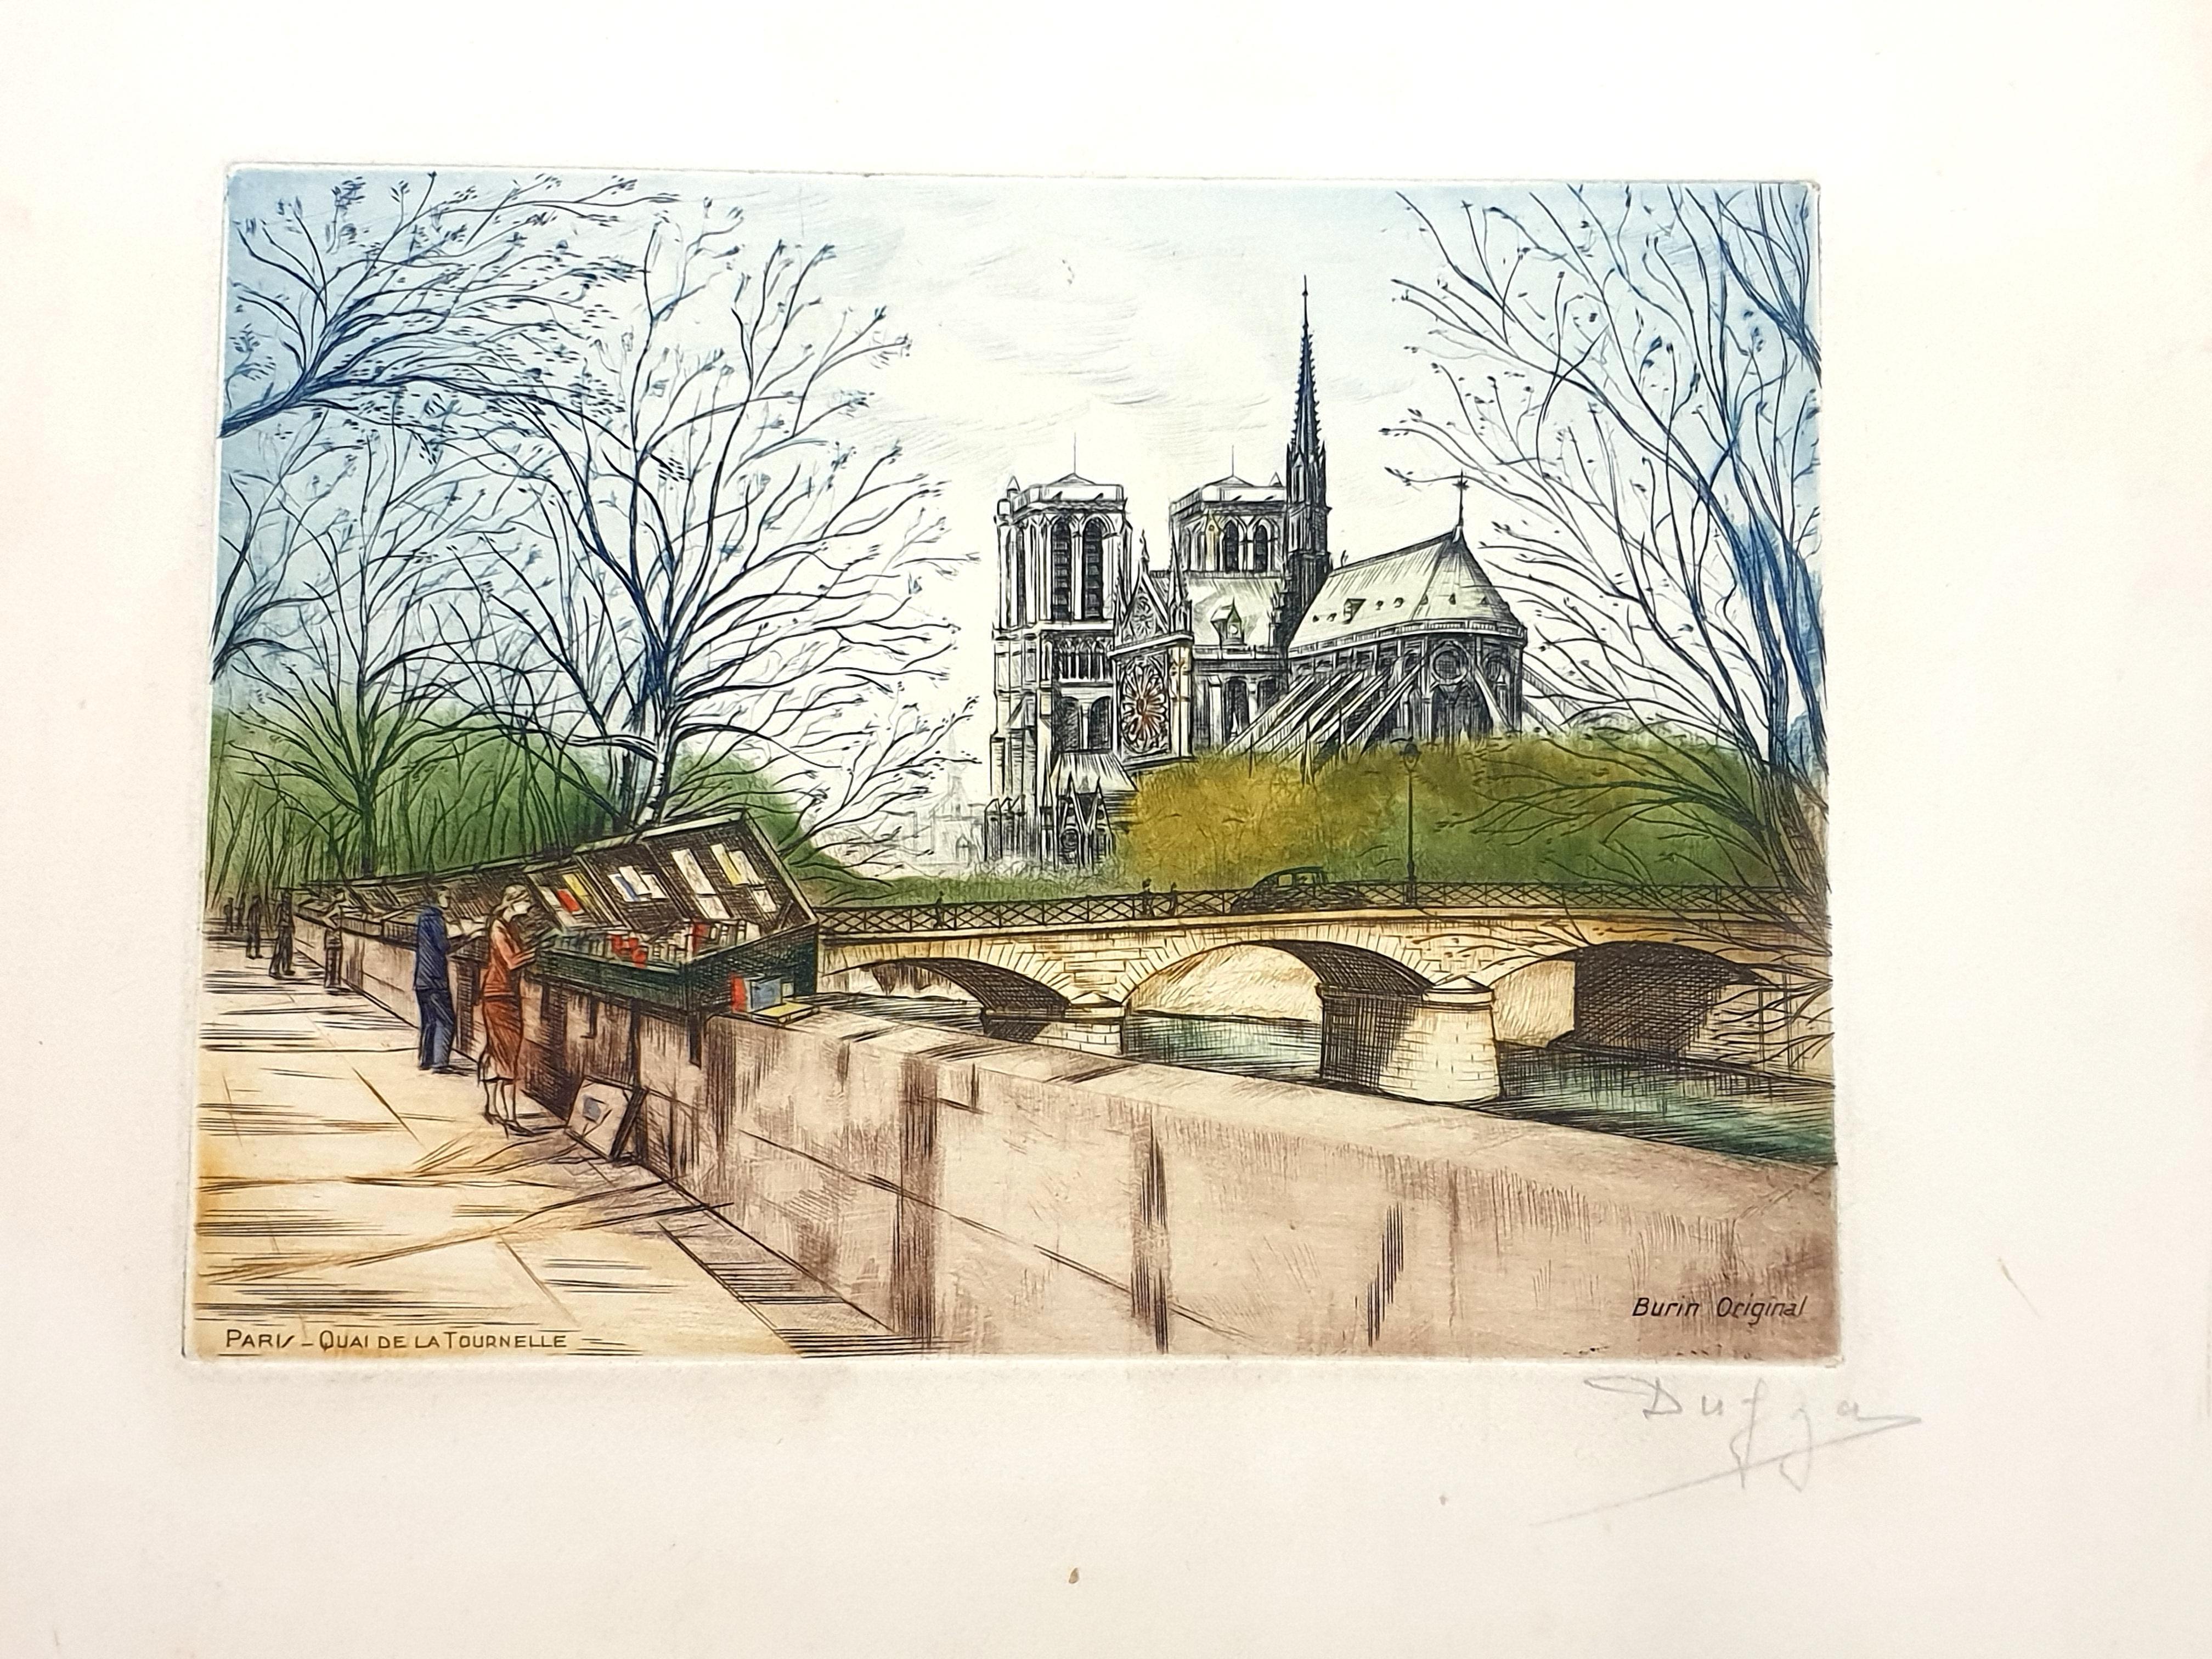 Dufza - Paris - Quai de la Tournelle - Original Handsignierte Radierung
Um 1940
Handsigniert mit Bleistift
Abmessungen: 20 x 25 cm 
Unnummeriert wie ausgegeben